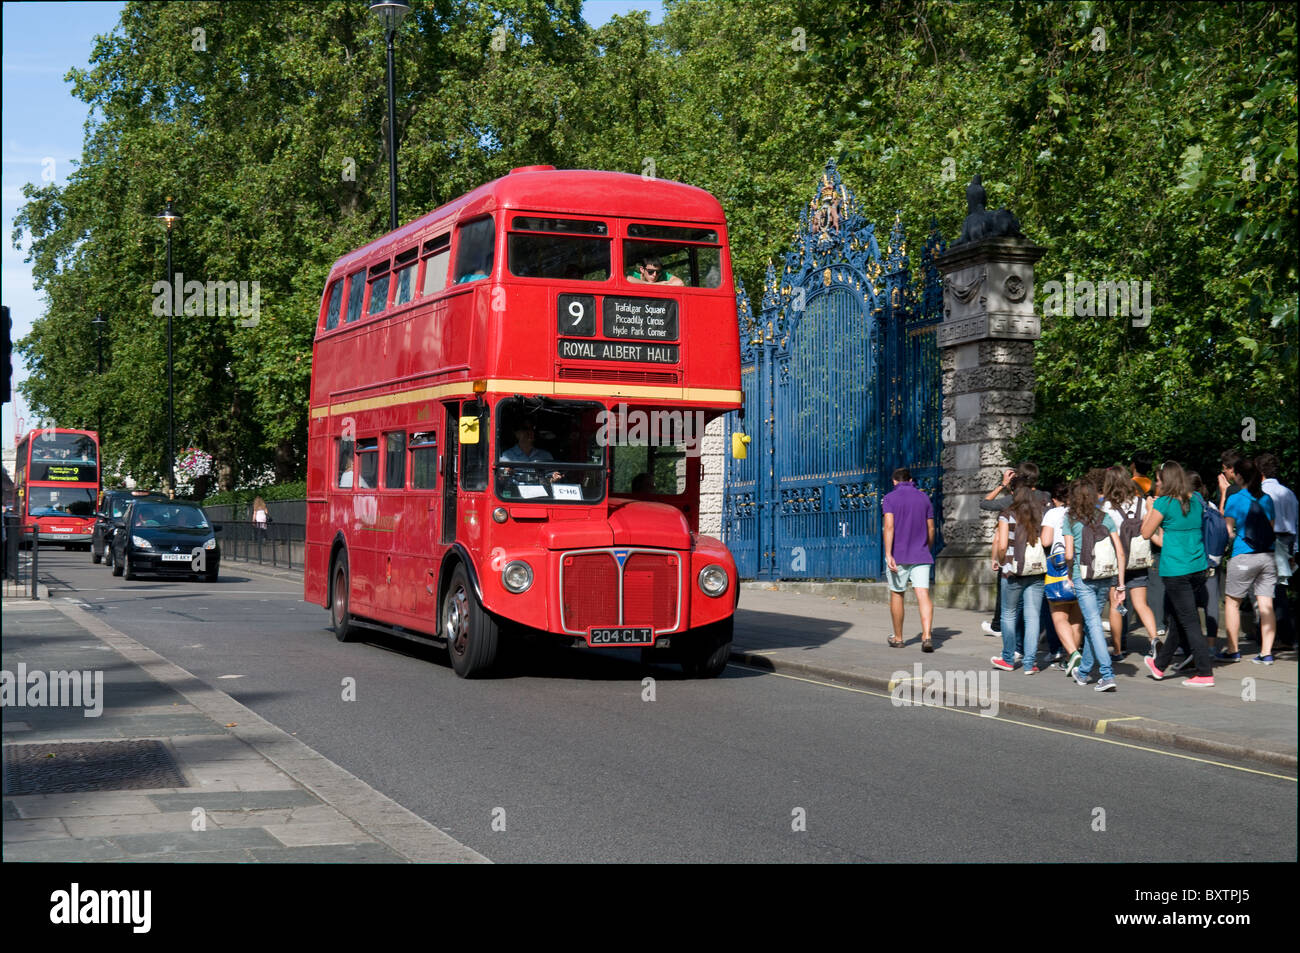 Ein Londoner Routemaster Bus auf Geschichtsroute 9 führt eine Gruppe von Touristen in Piccadilly. Sonnigen Sommertag in London Stockfoto